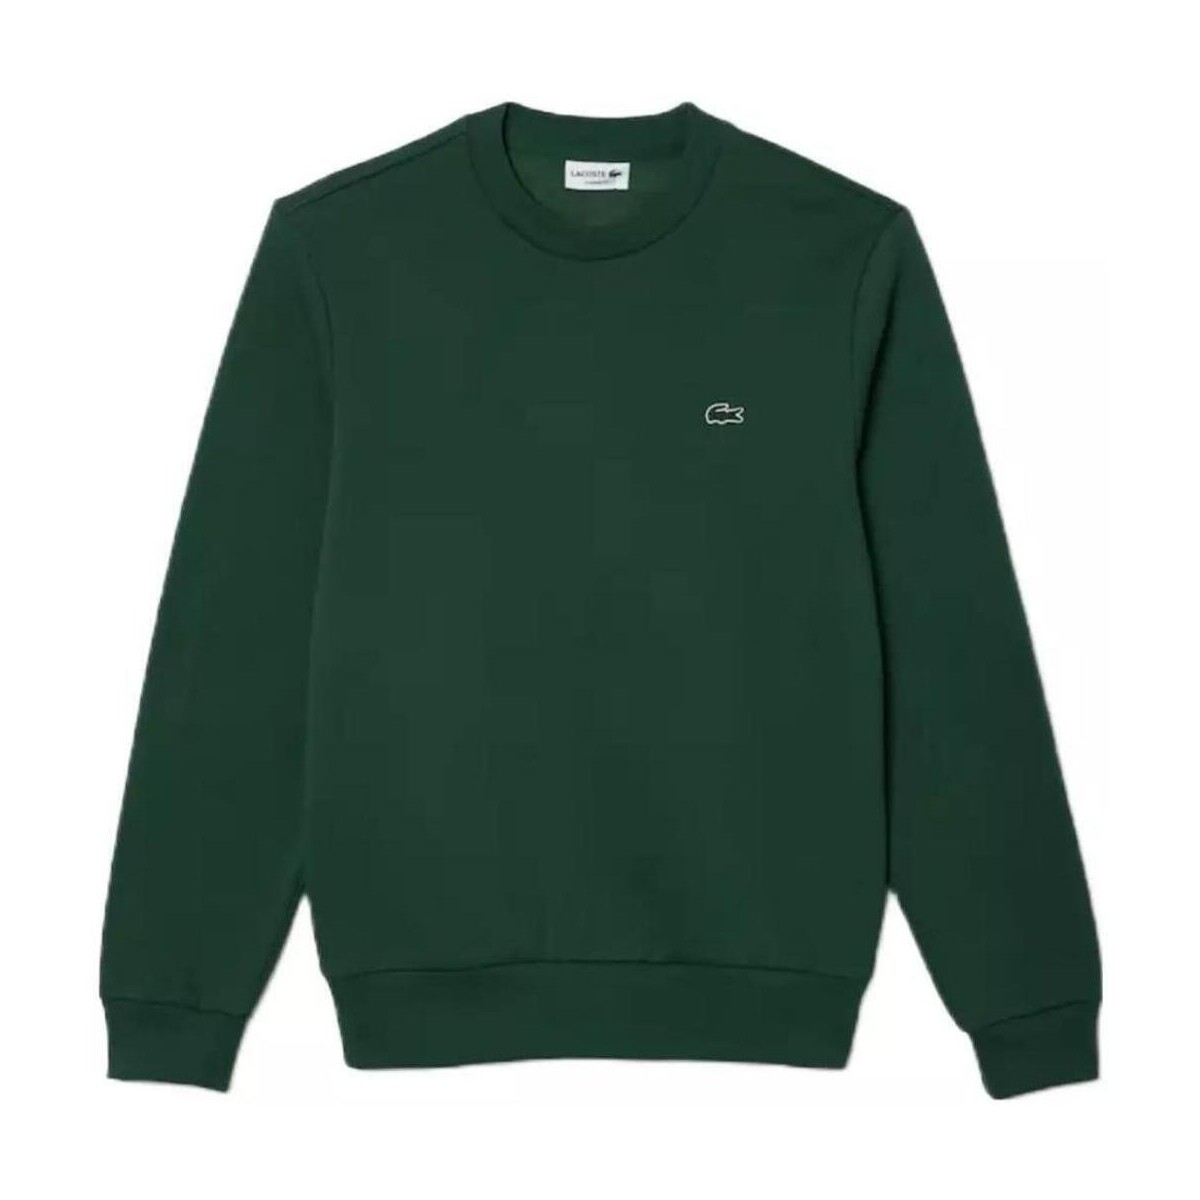 Textiel Heren Sweaters / Sweatshirts Lacoste  Groen